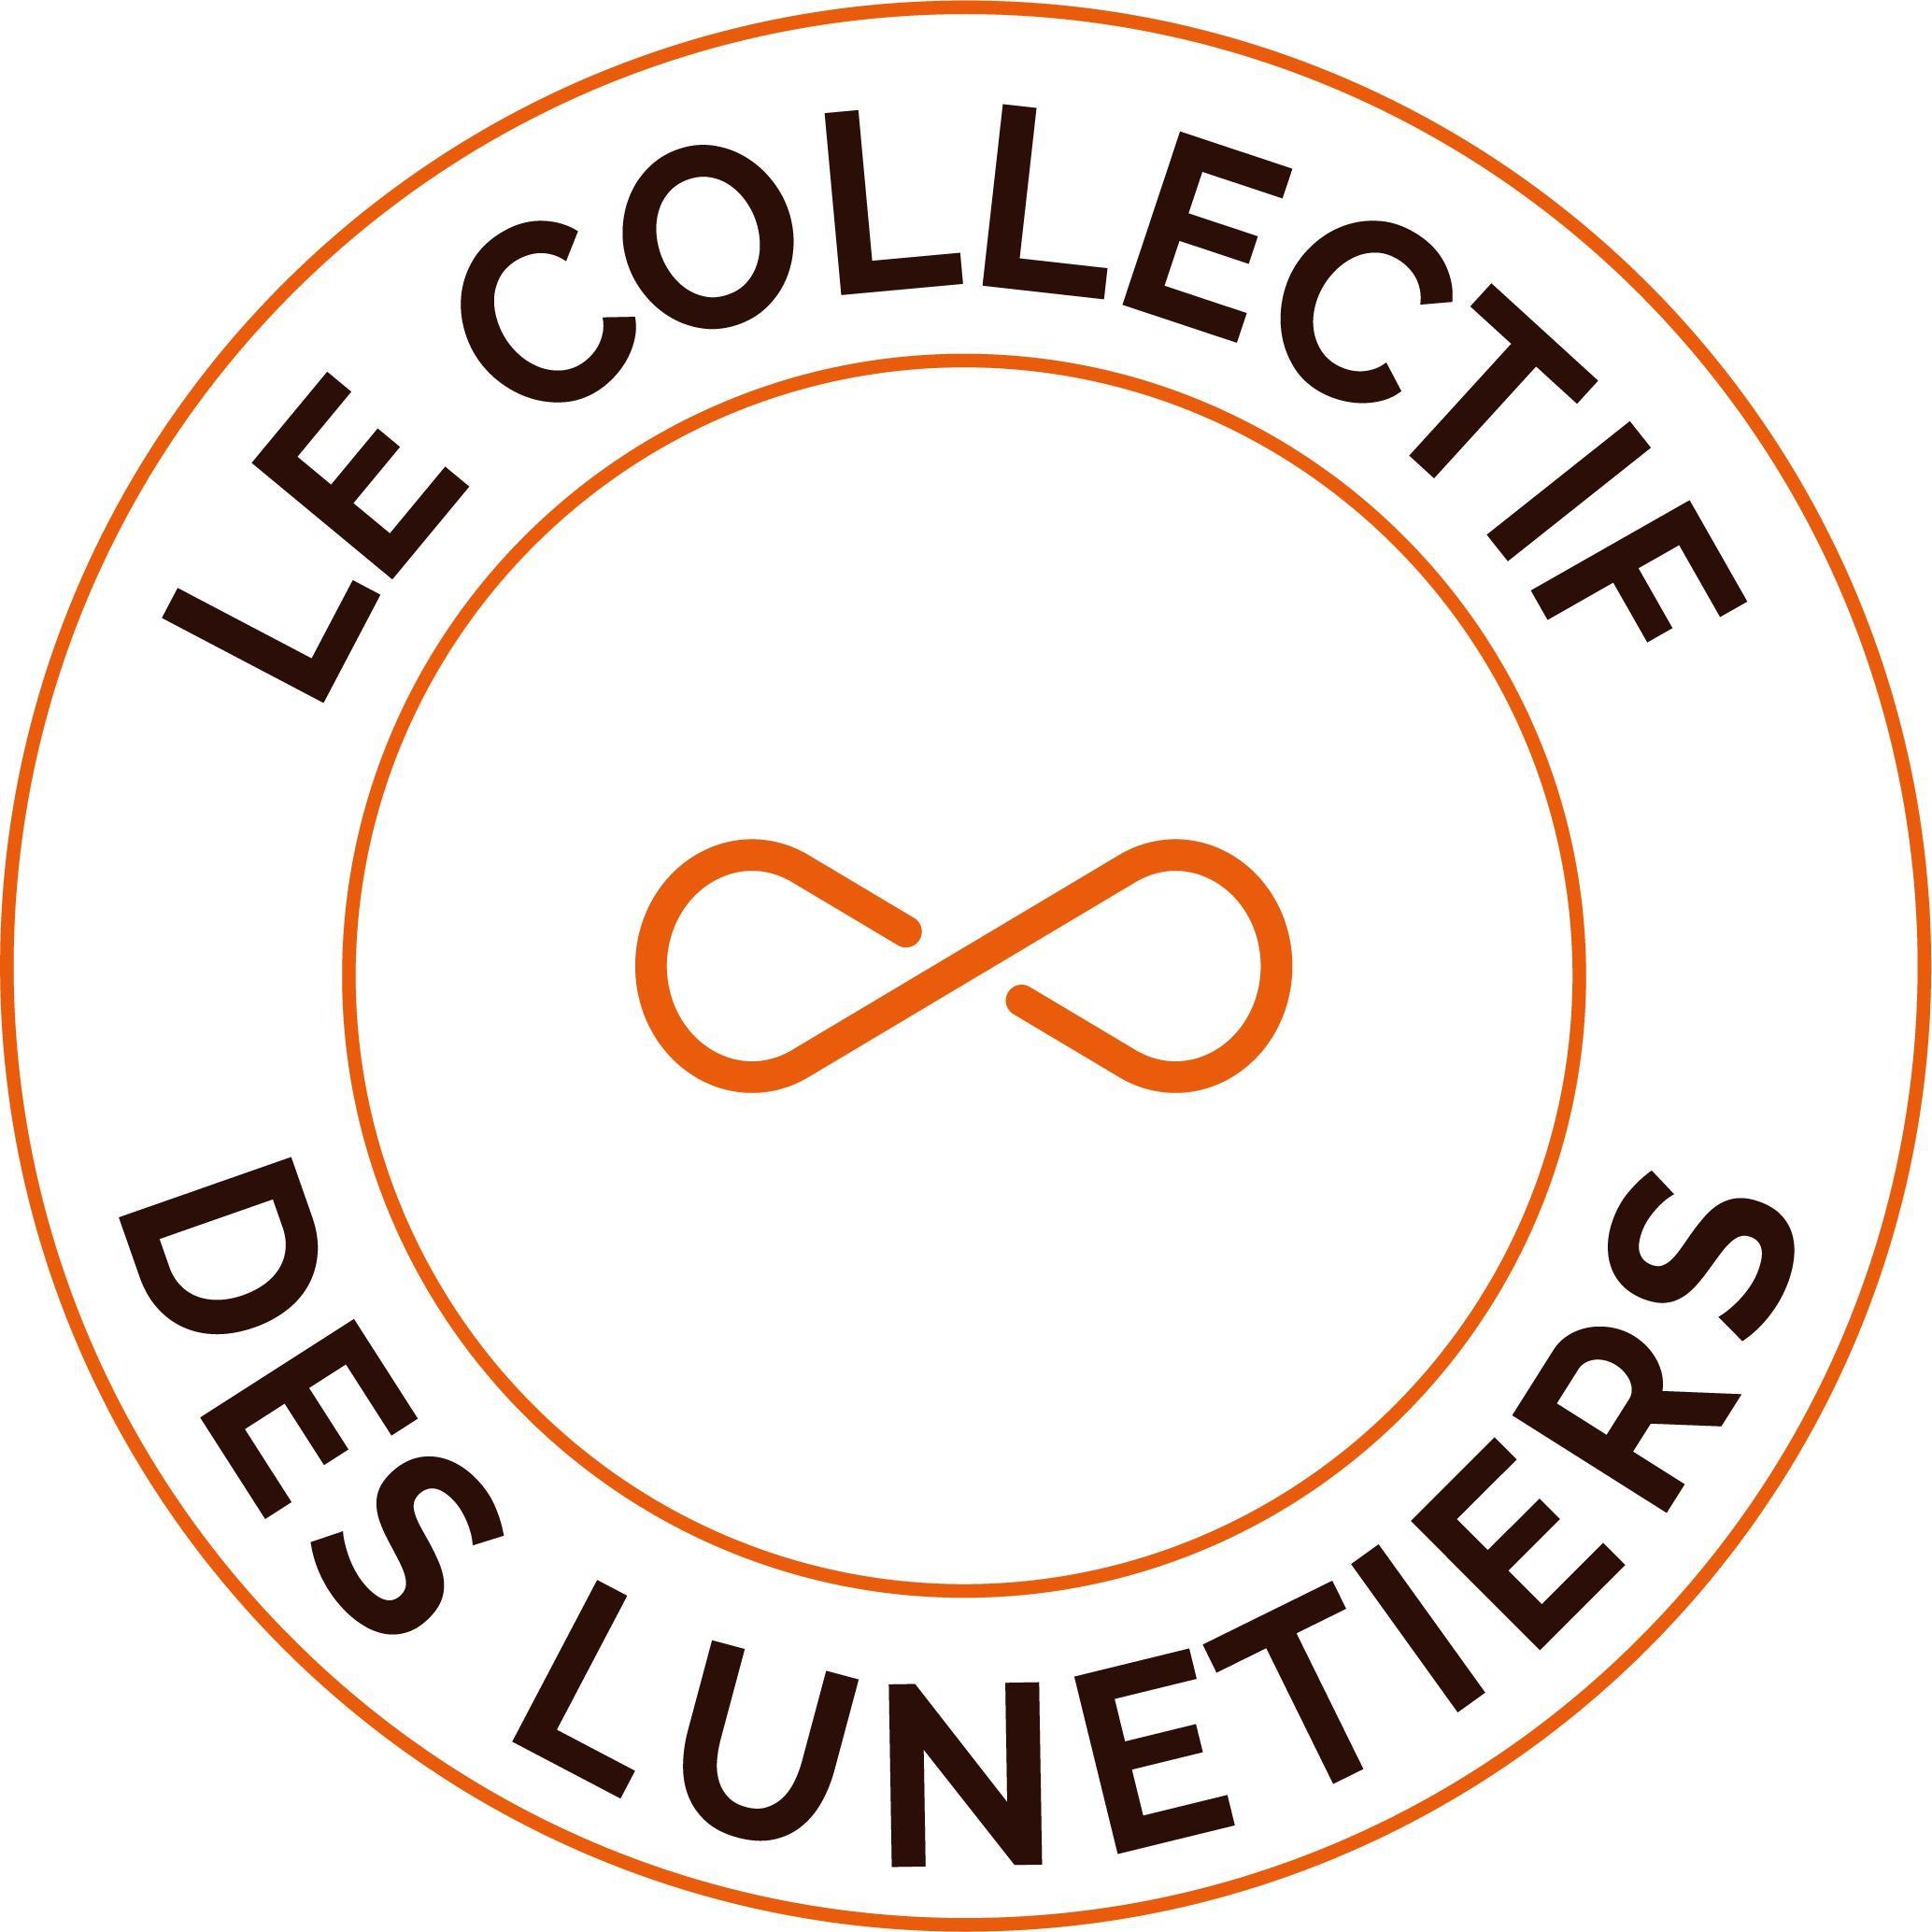 Le Collectif Des Lunetiers Nueil Les Aubiers